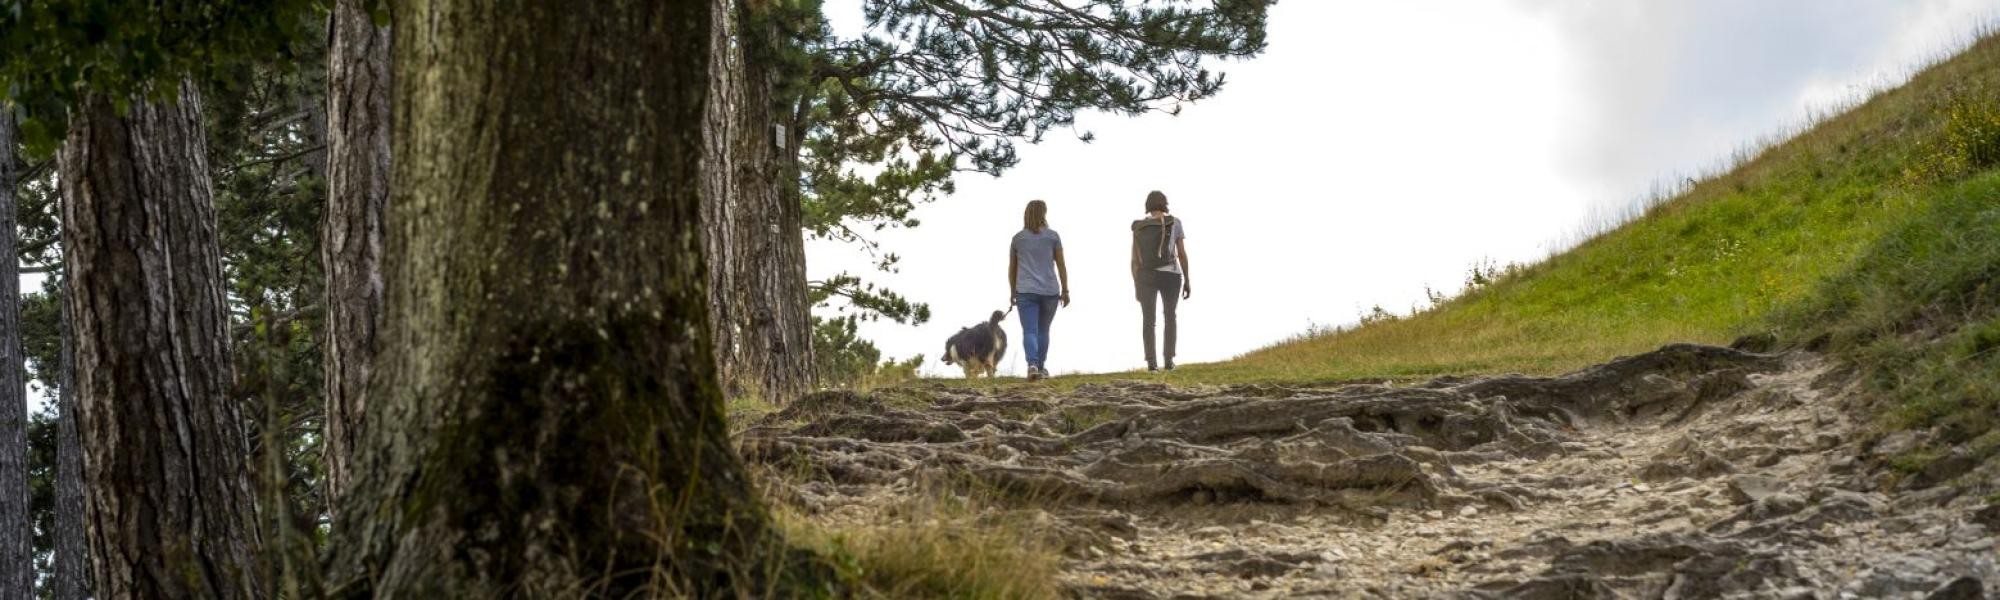 Zwei weibliche Wanderer mit Hund auf dem Weg zum Ipf-Plateau